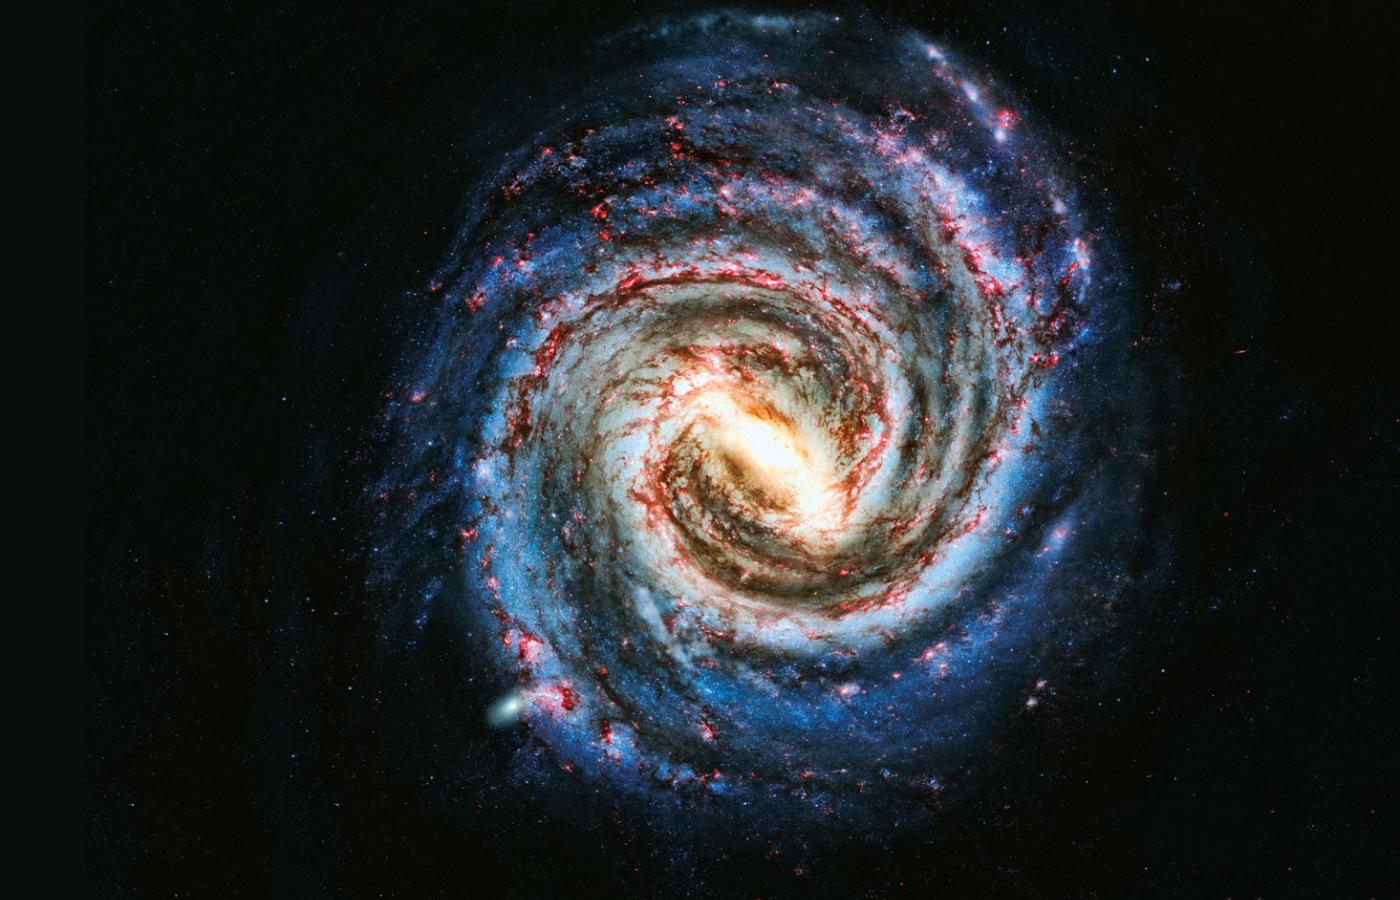 Tak prawdopodobnie wygląda nasza Galaktyka widziana z oddali. Obraz jest kompozycją kilku zdjęć galaktyk bardzo podobnych do Drogi Mlecznej. To galaktyka spiralna z poprzeczką, nieaktywna.